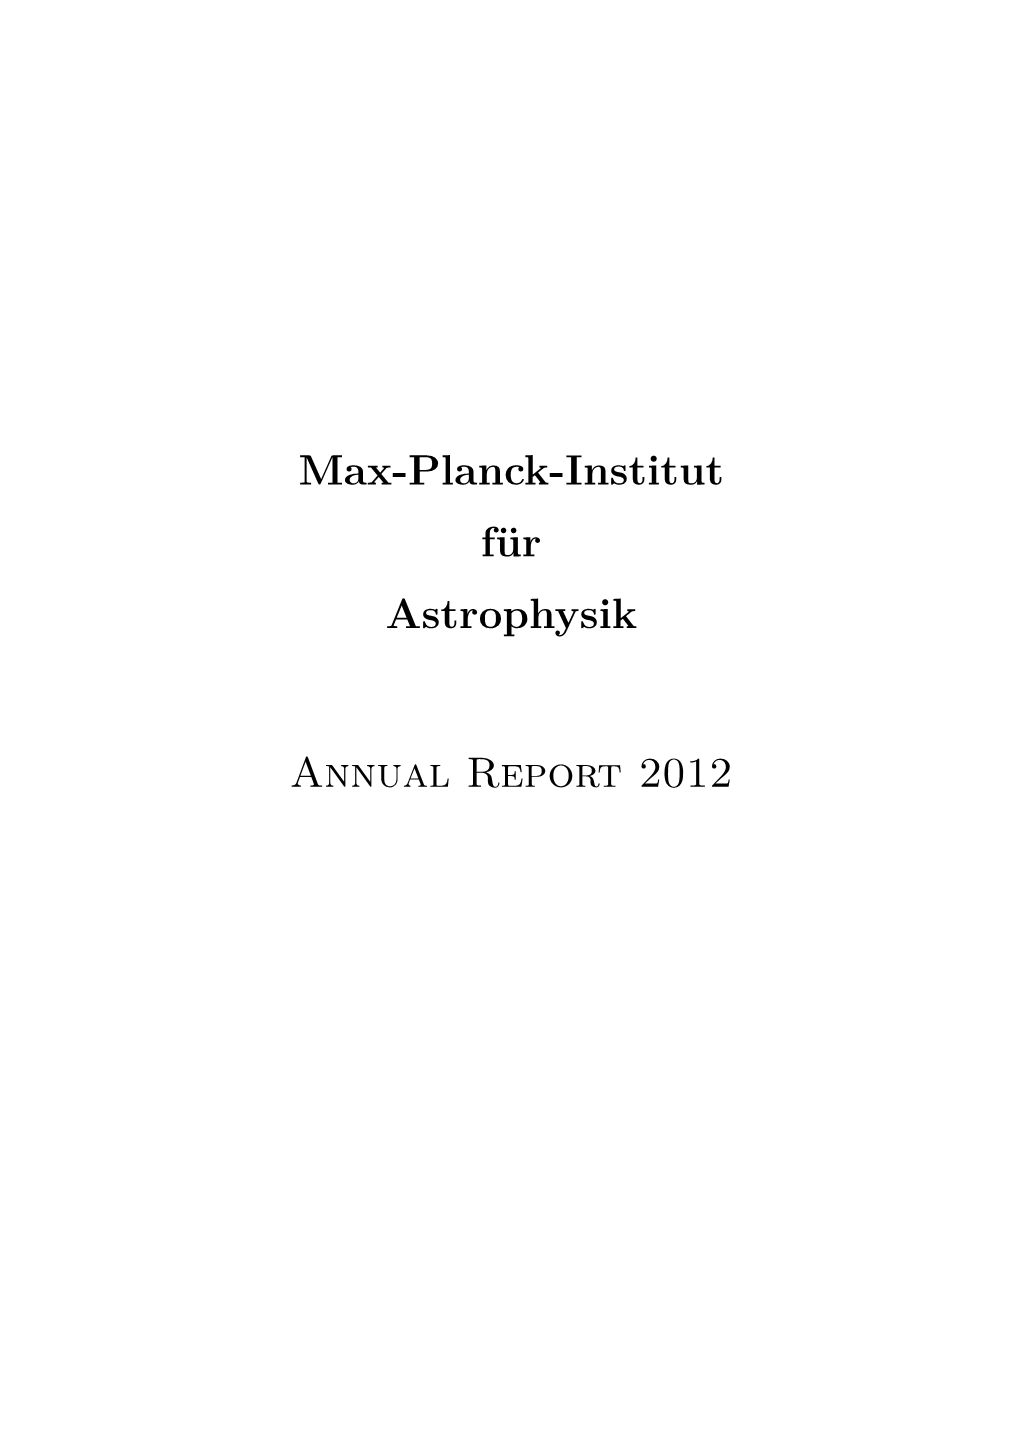 Max-Planck-Institut Für Astrophysik Annual Report 2012